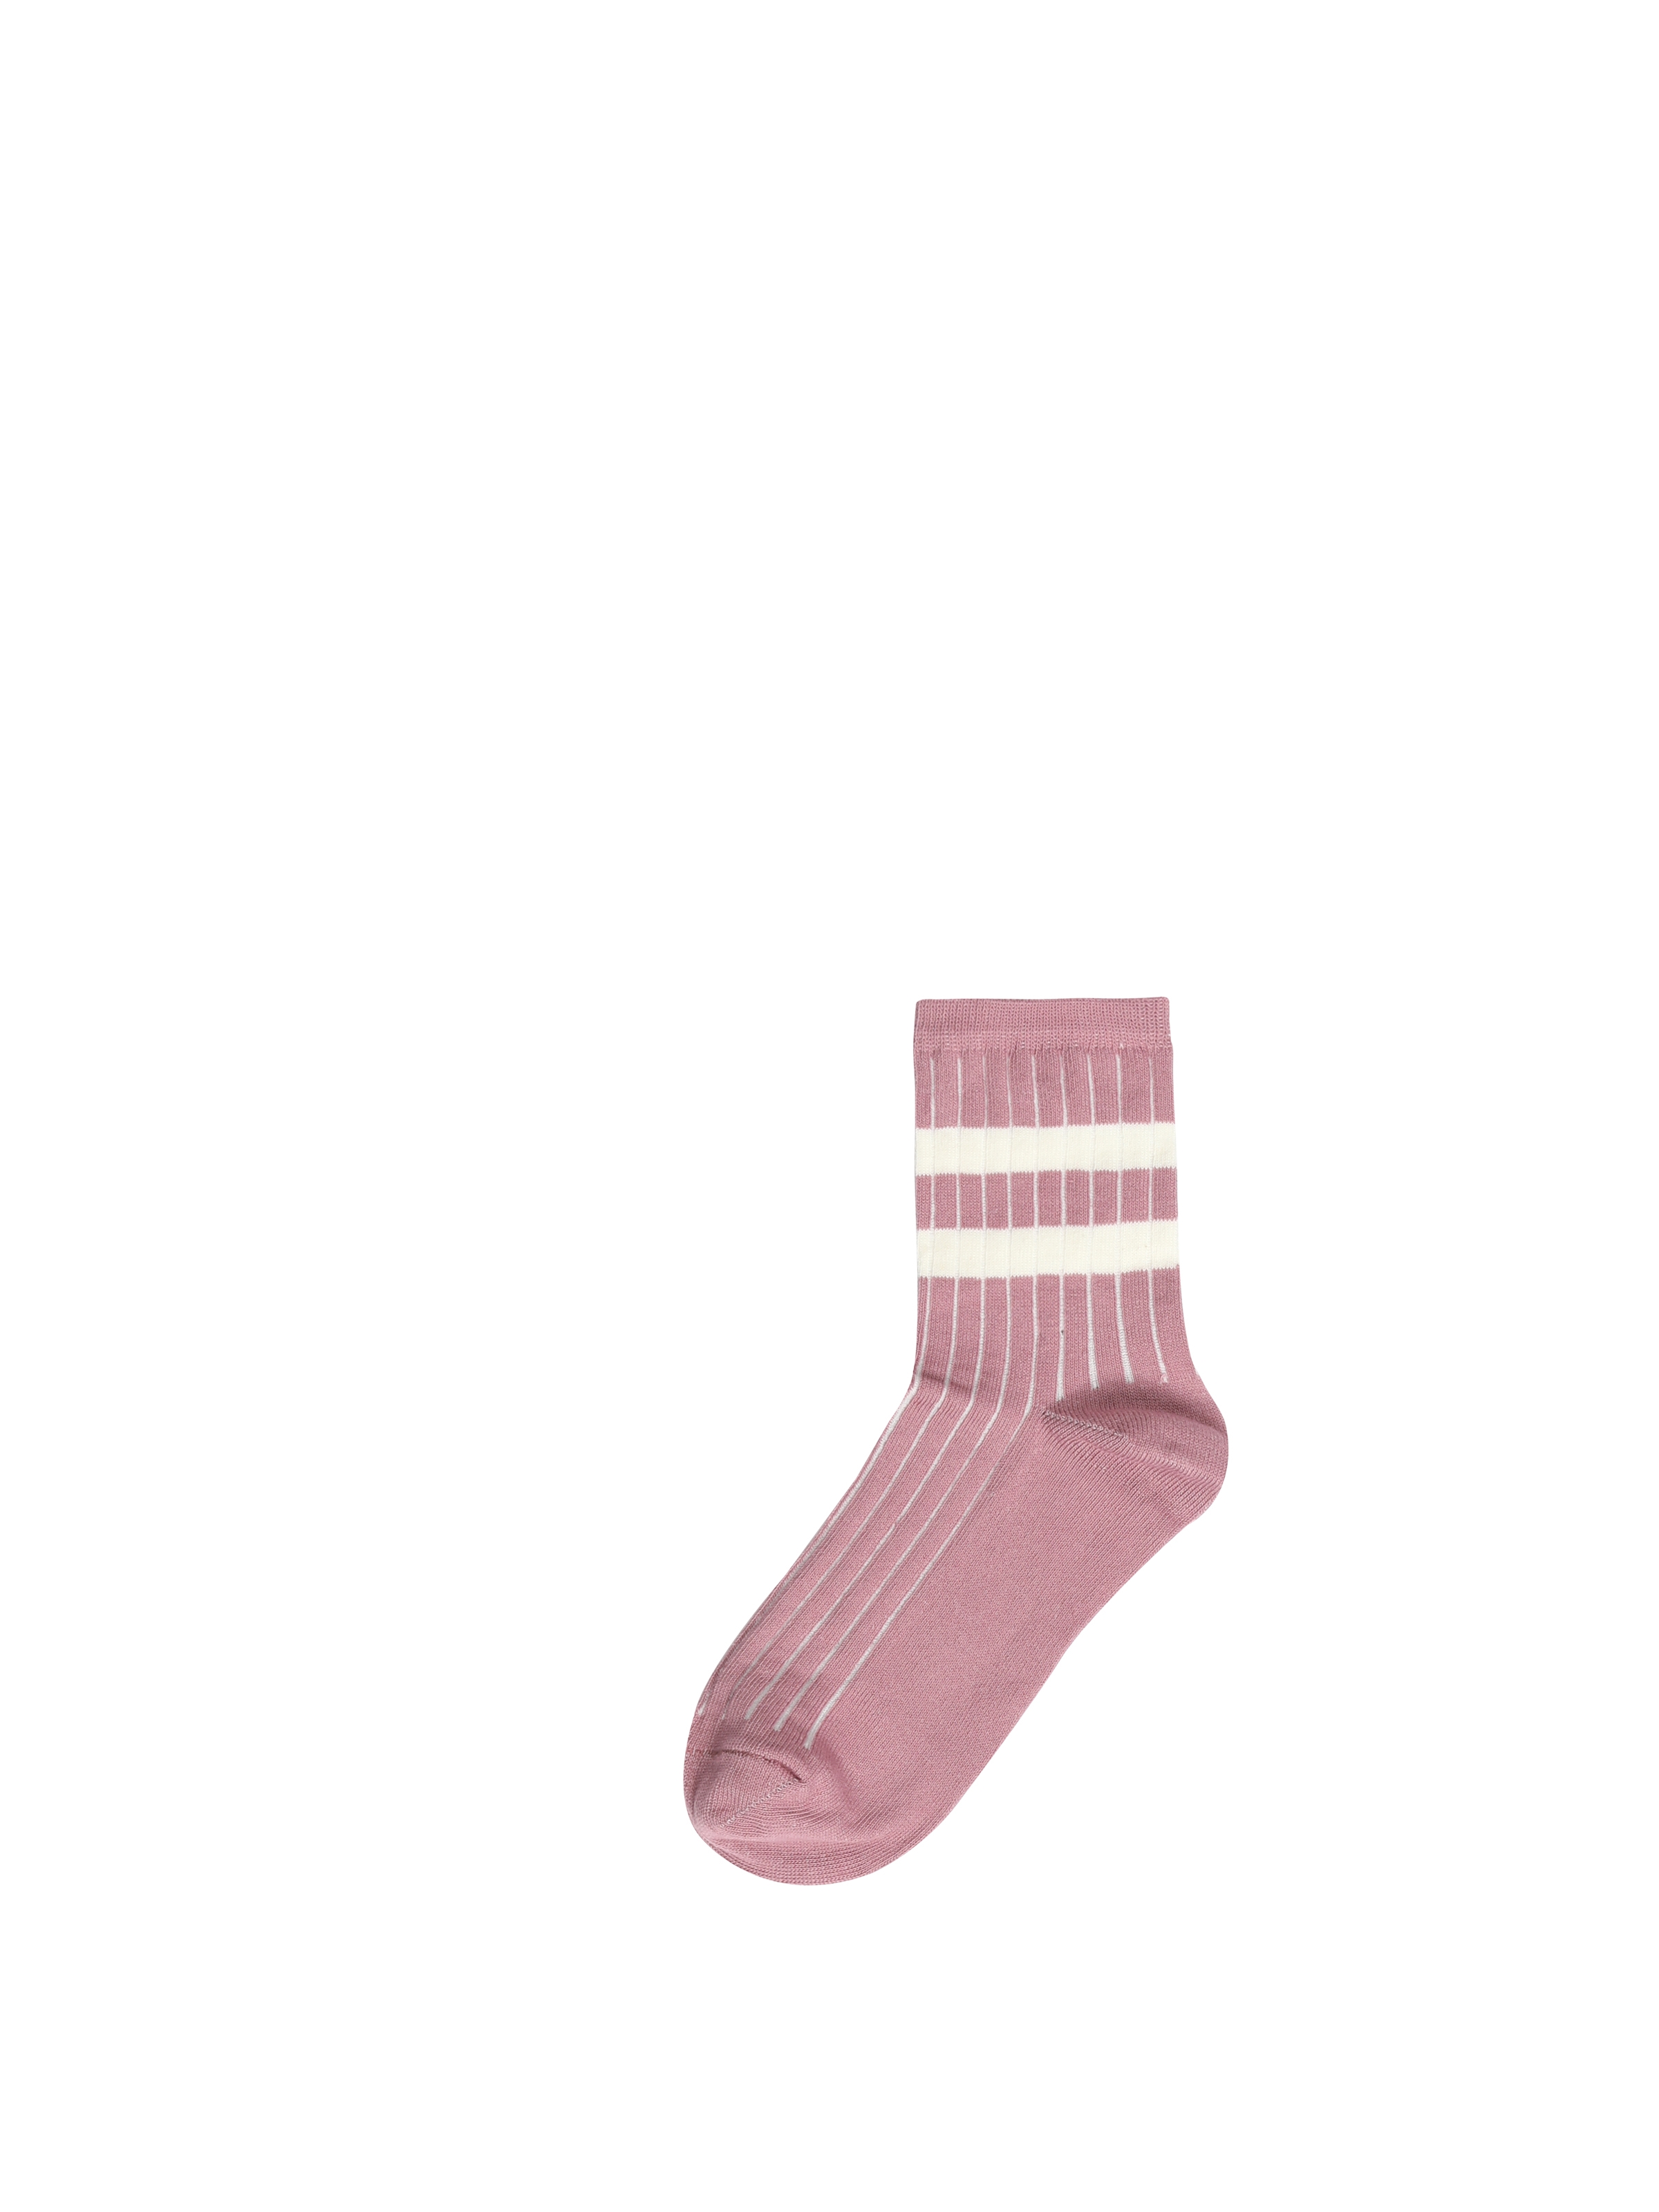 Kadın Pembe Çorap